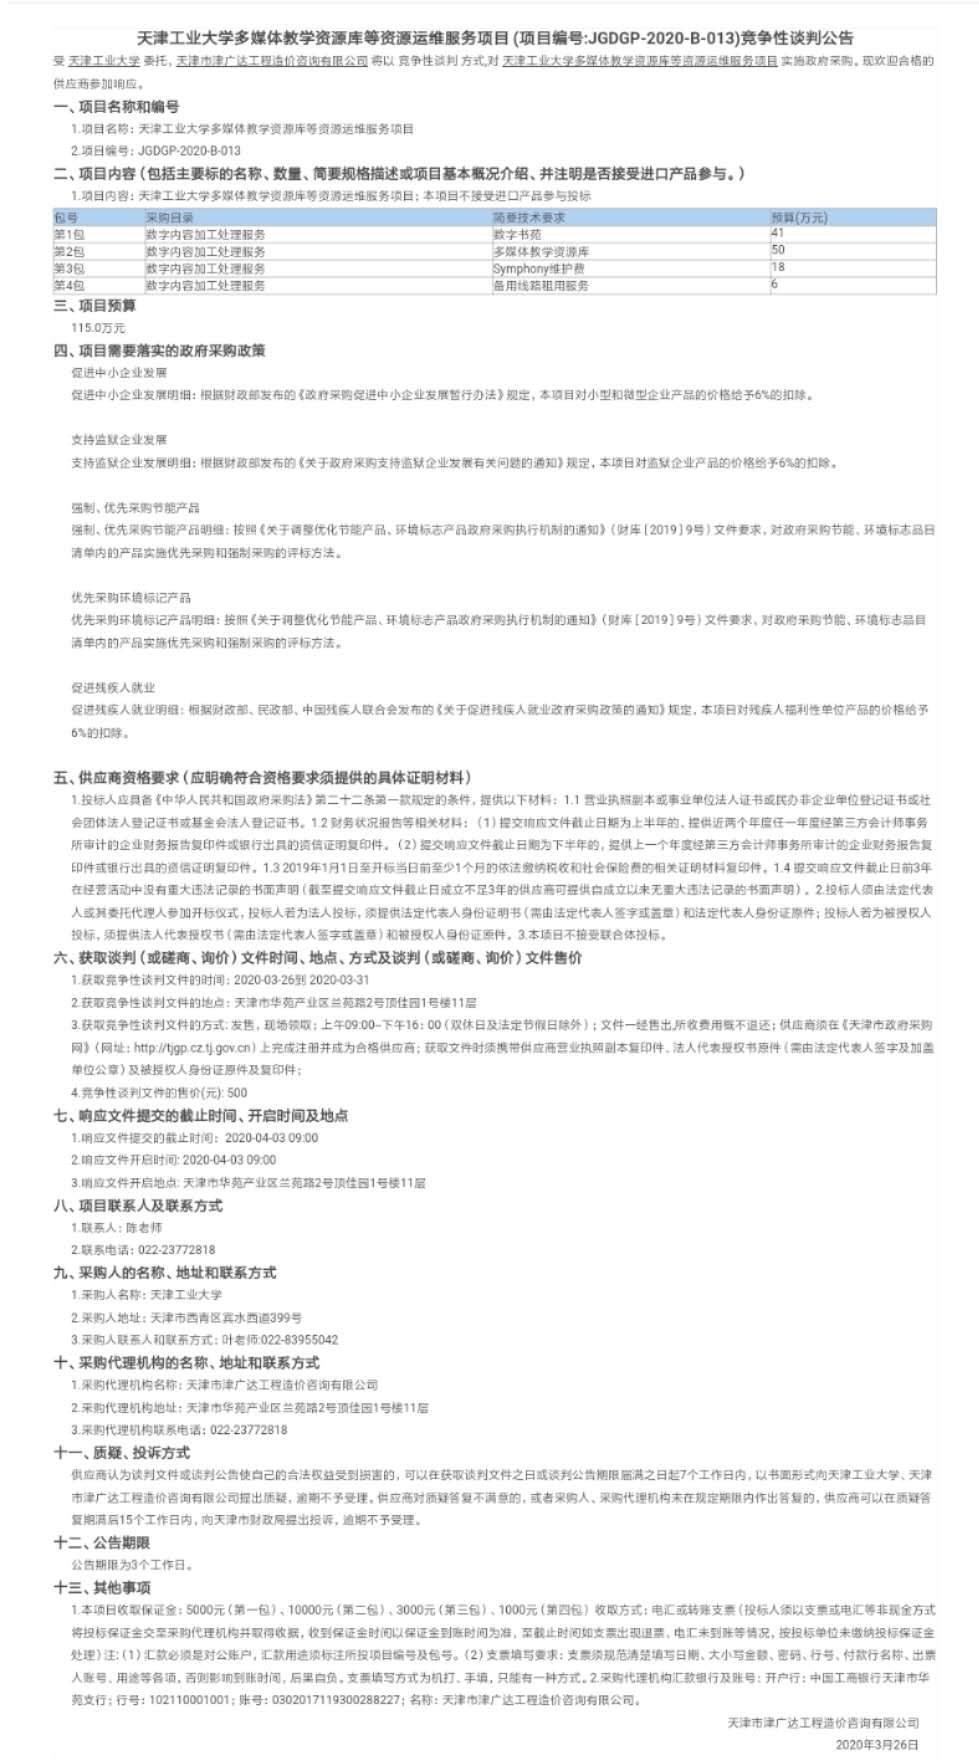 天津工业大学多媒体教学资源库等资源运维服务(图1)